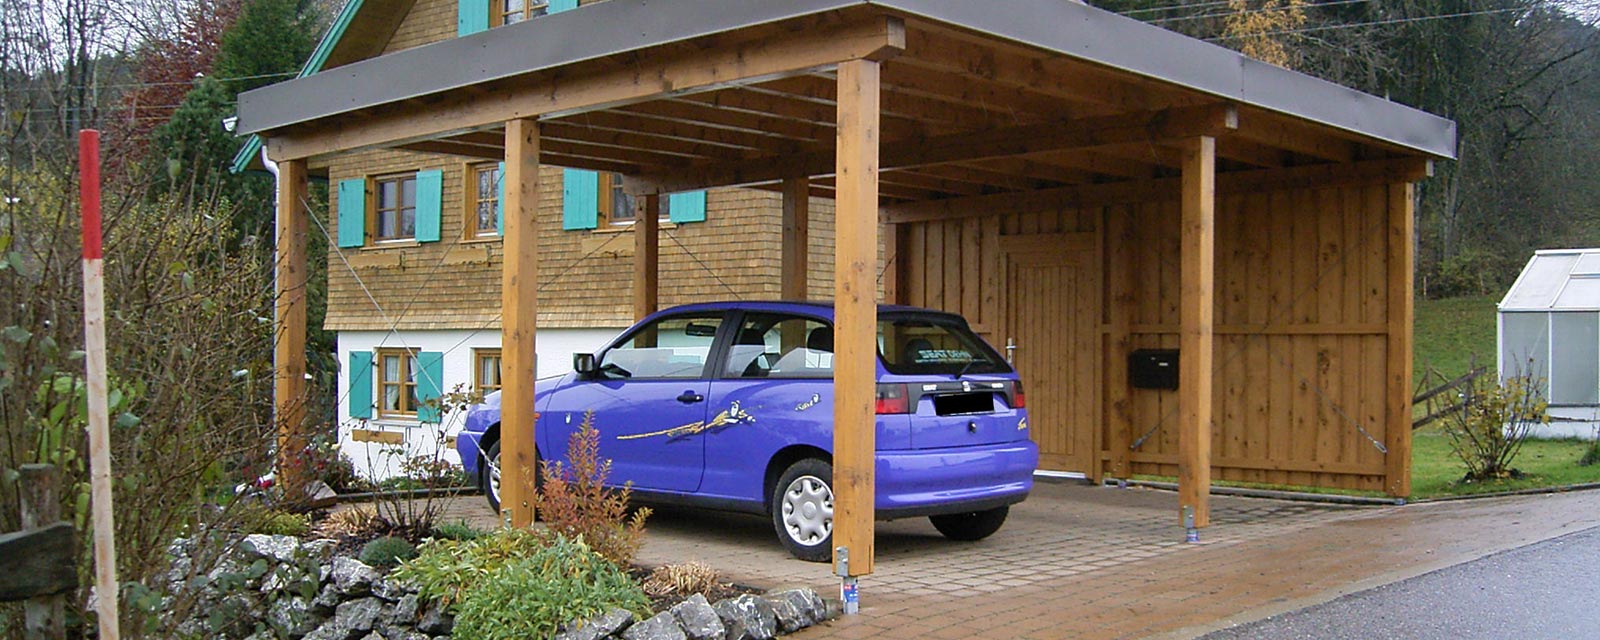 Carports & Garagen von Holzbau Merz